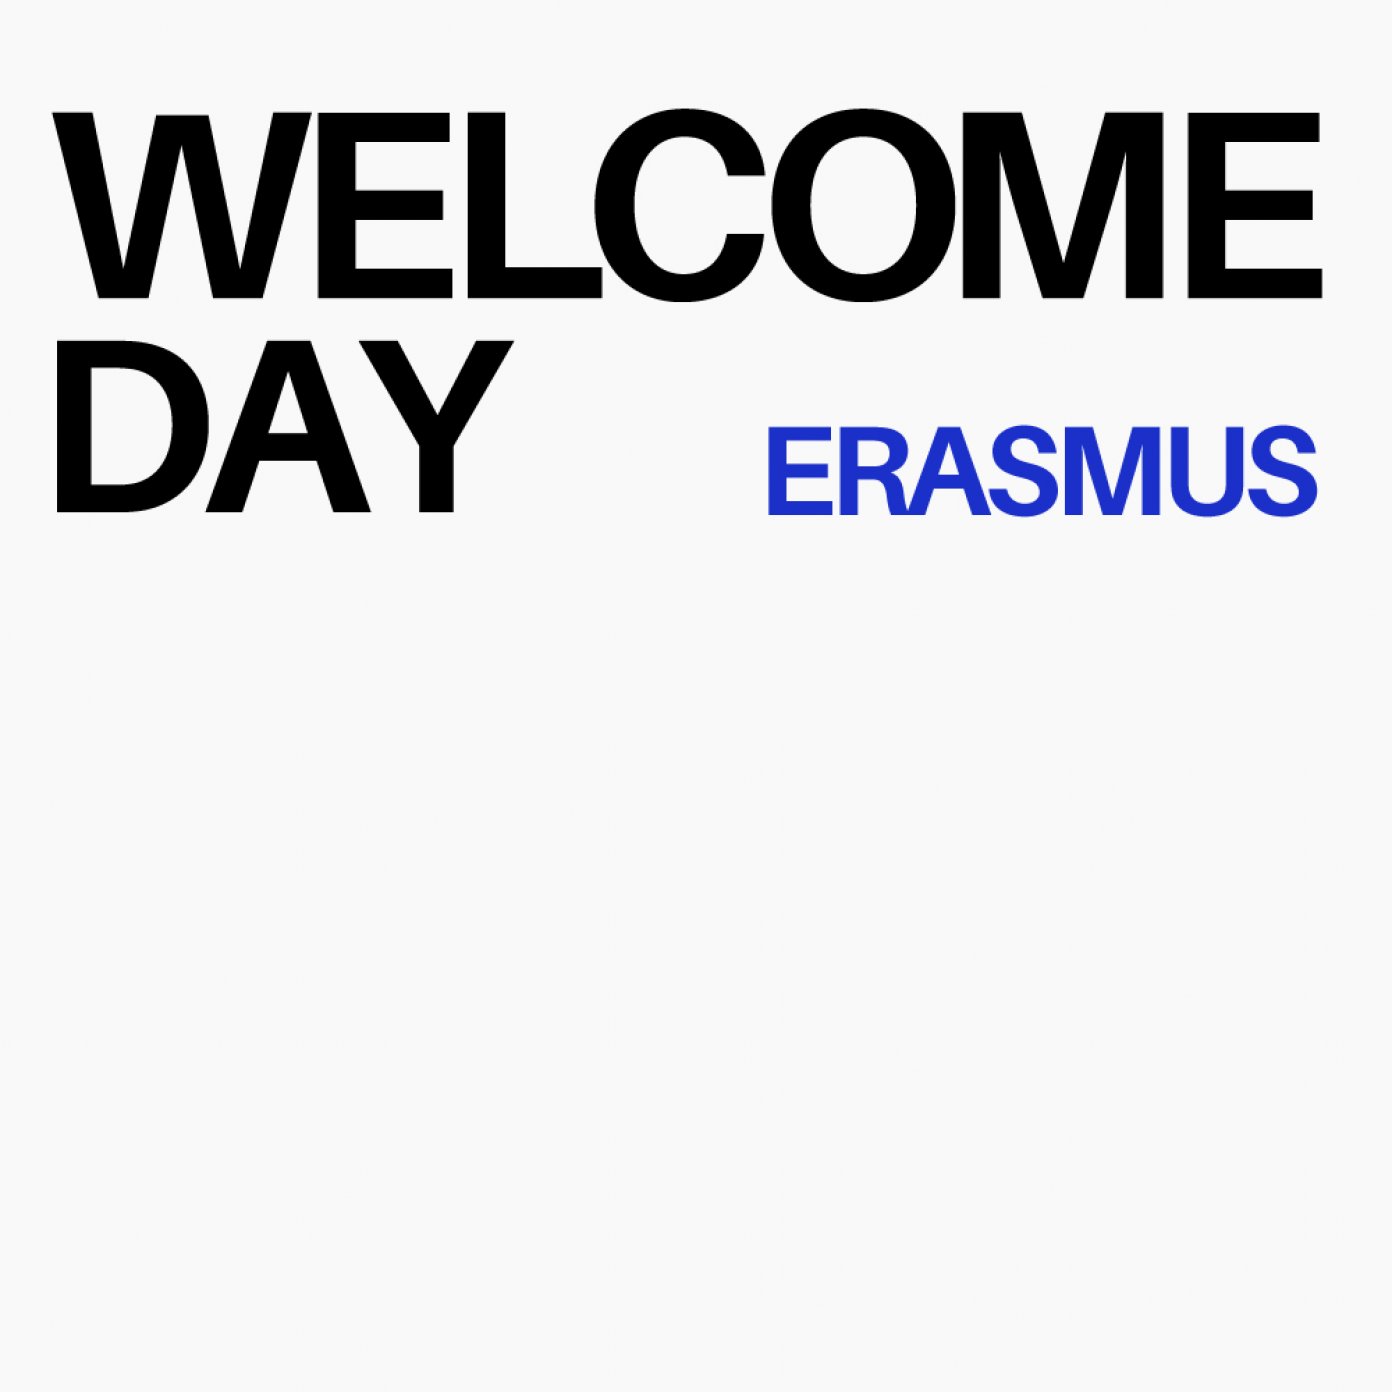 WELCOME DAY ERASMUS